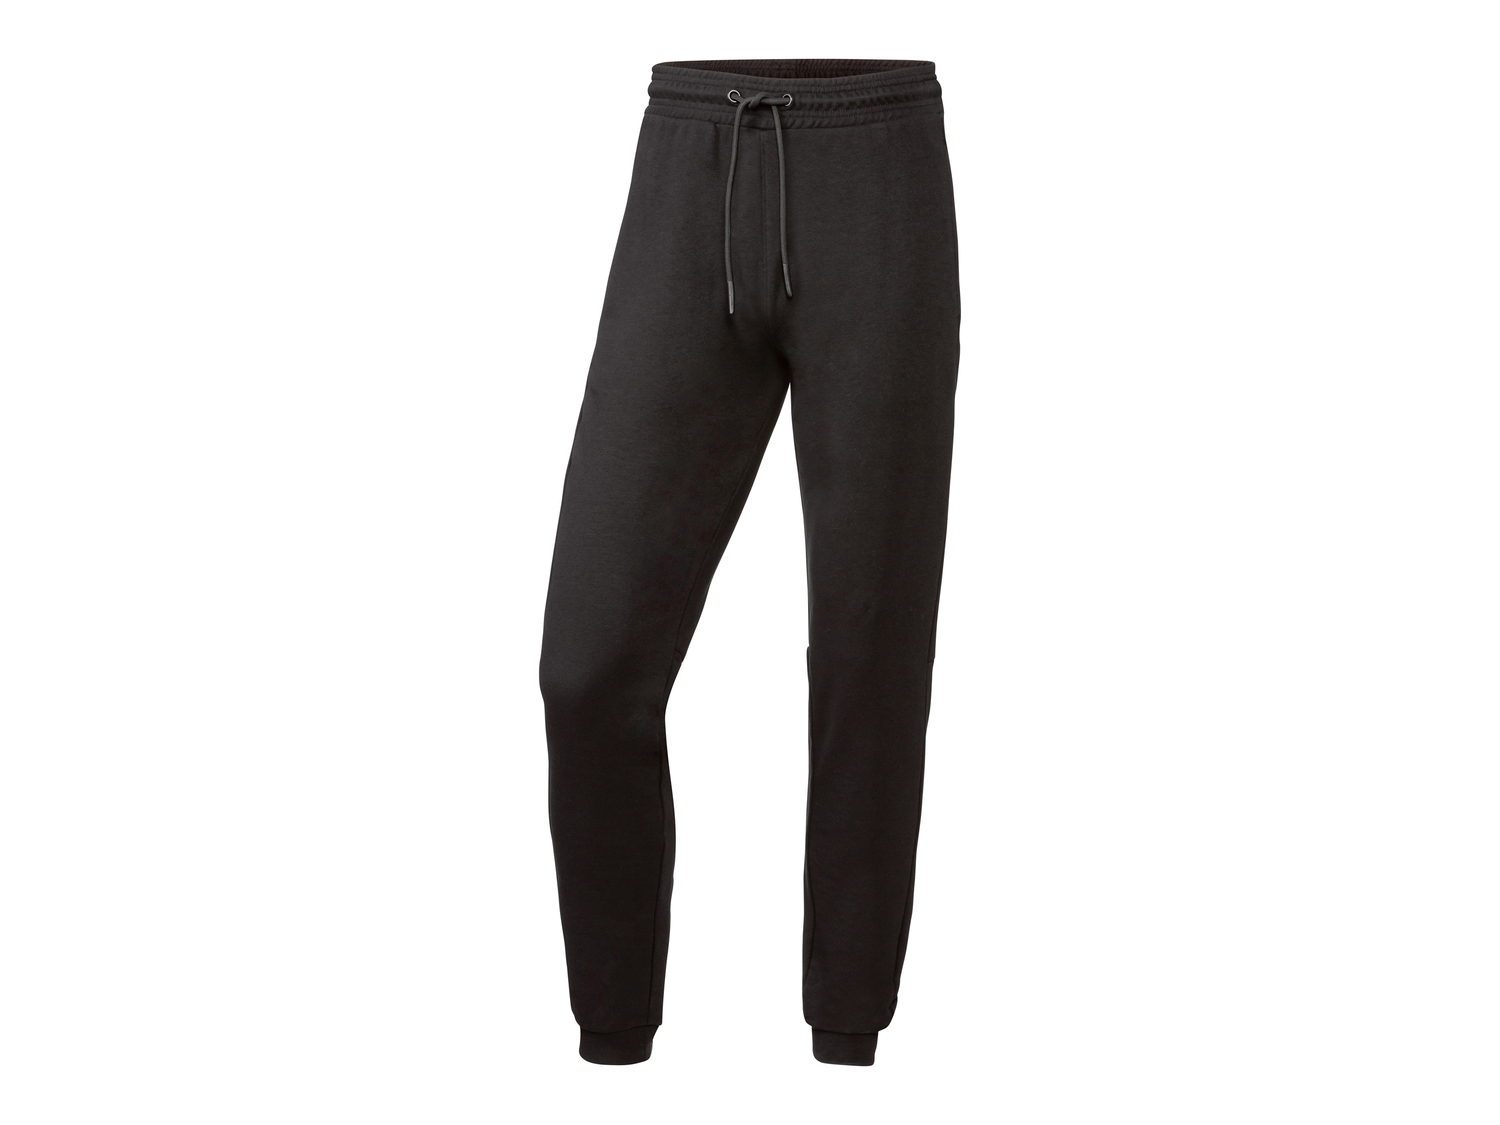 Pantaloni sportivi da uomo Crivit, prezzo 9.99 &#8364; 
Misure: S-XL
Taglie ...